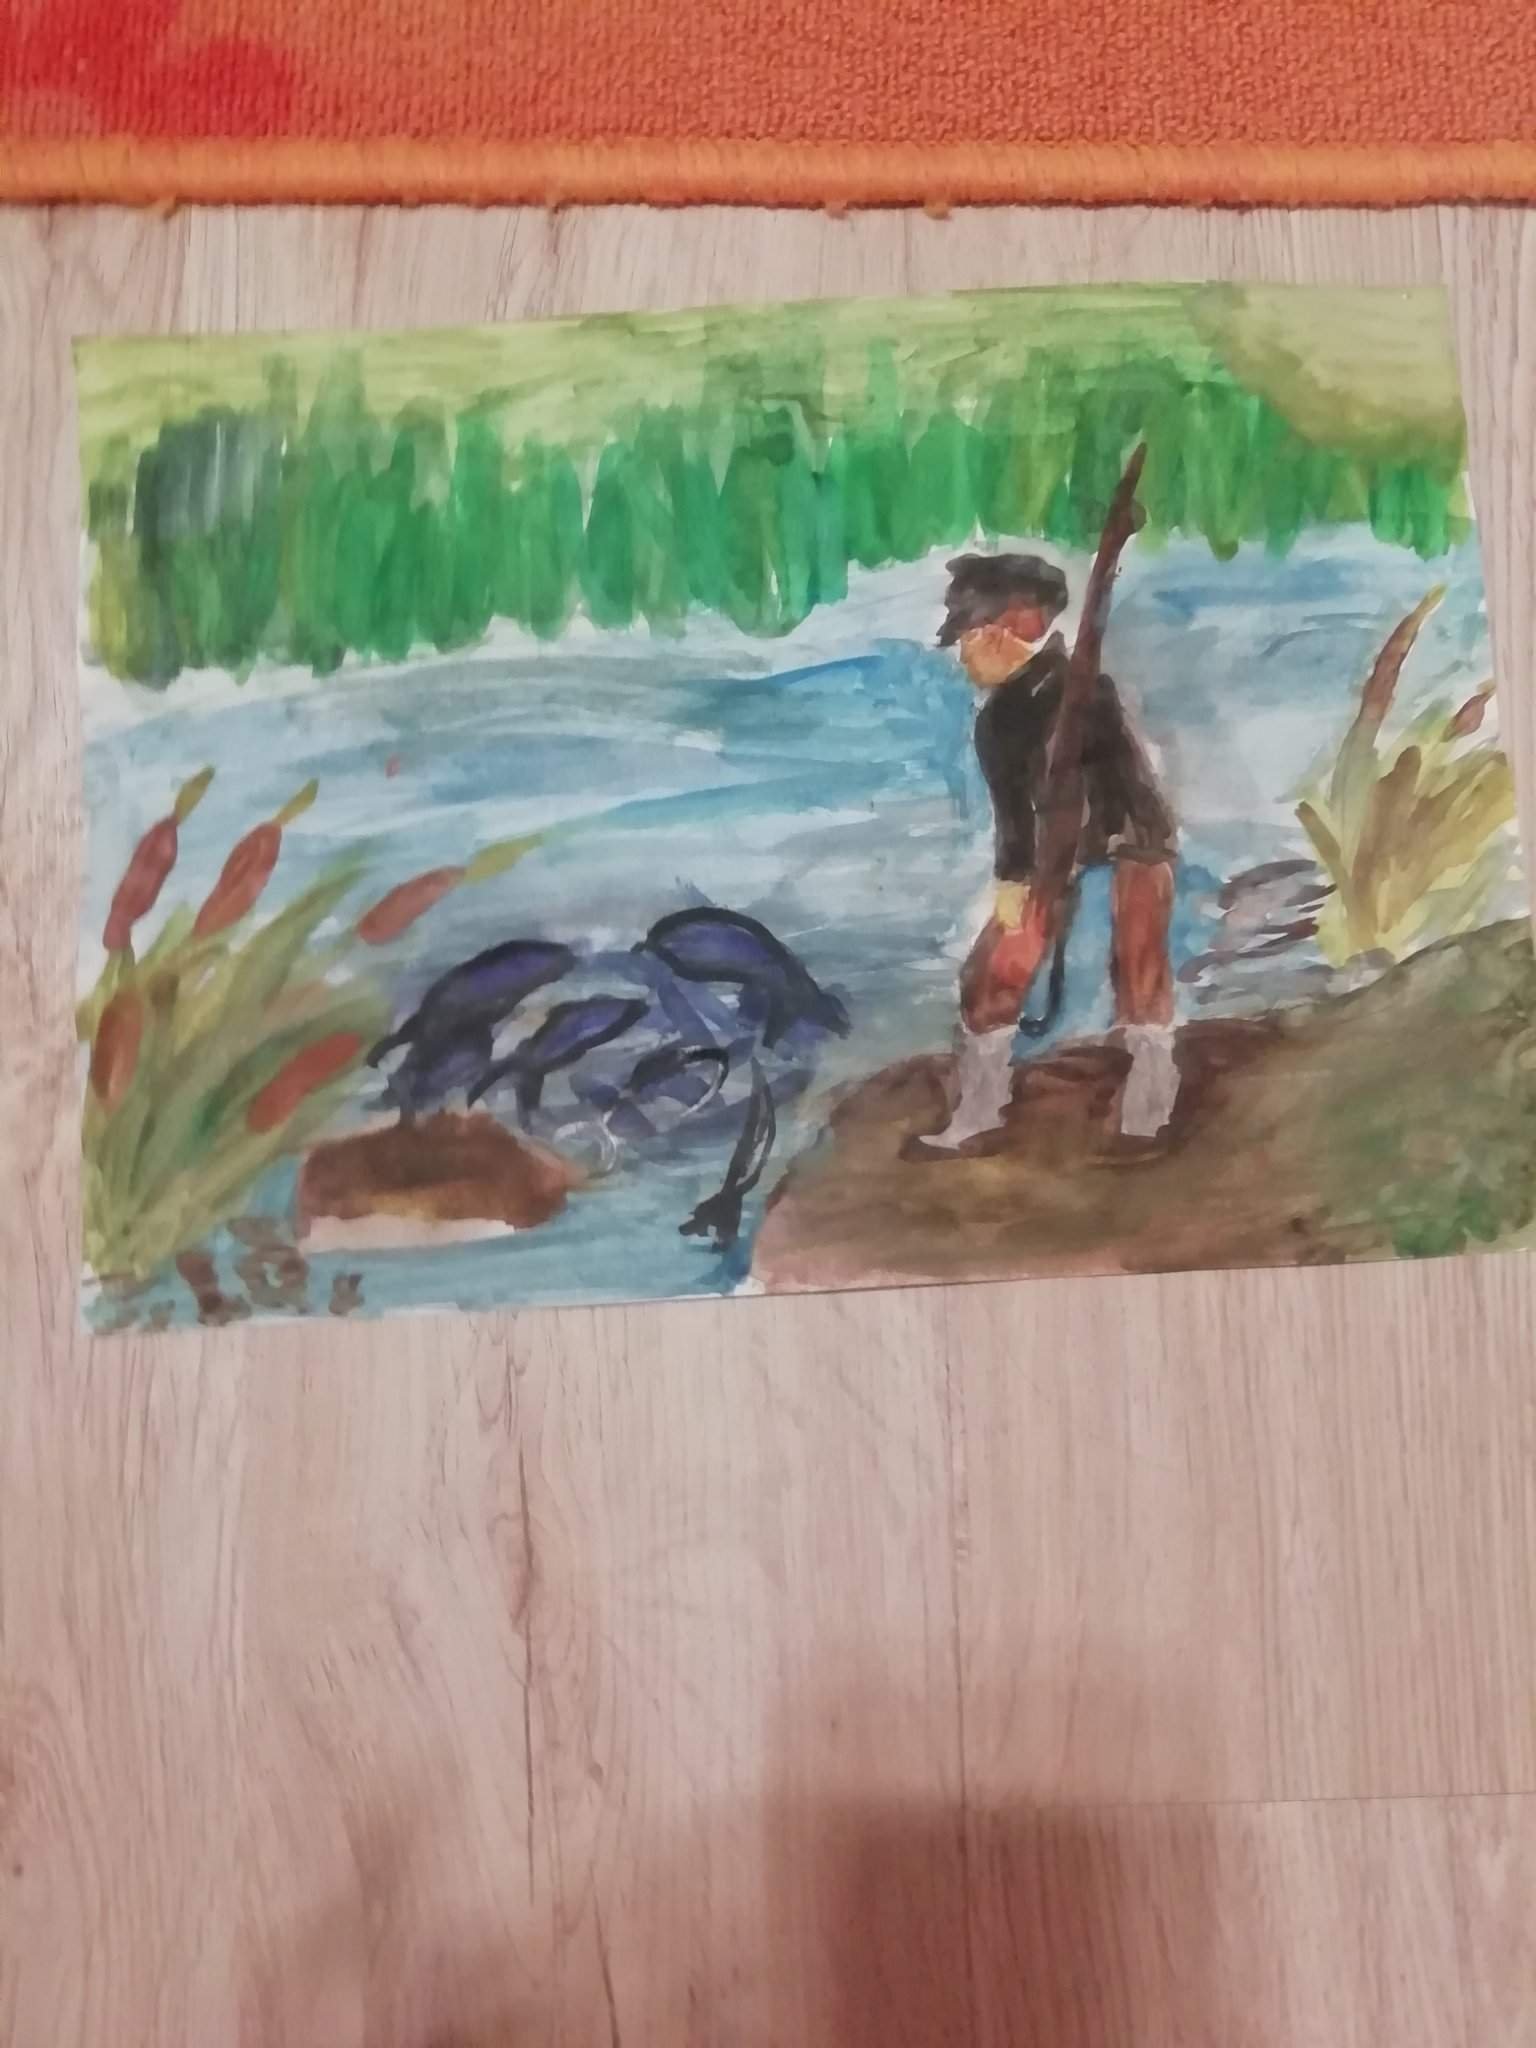 Фрагмент из васюткино озеро. Иллюстрация к произведению Васюткино озеро. Нарисовать иллюстрацию к рассказу Васюткино озеро. Иллюстрация к рассказу Васюткино озеро. Иллюстрация к рассказу "Васюткина озеро.